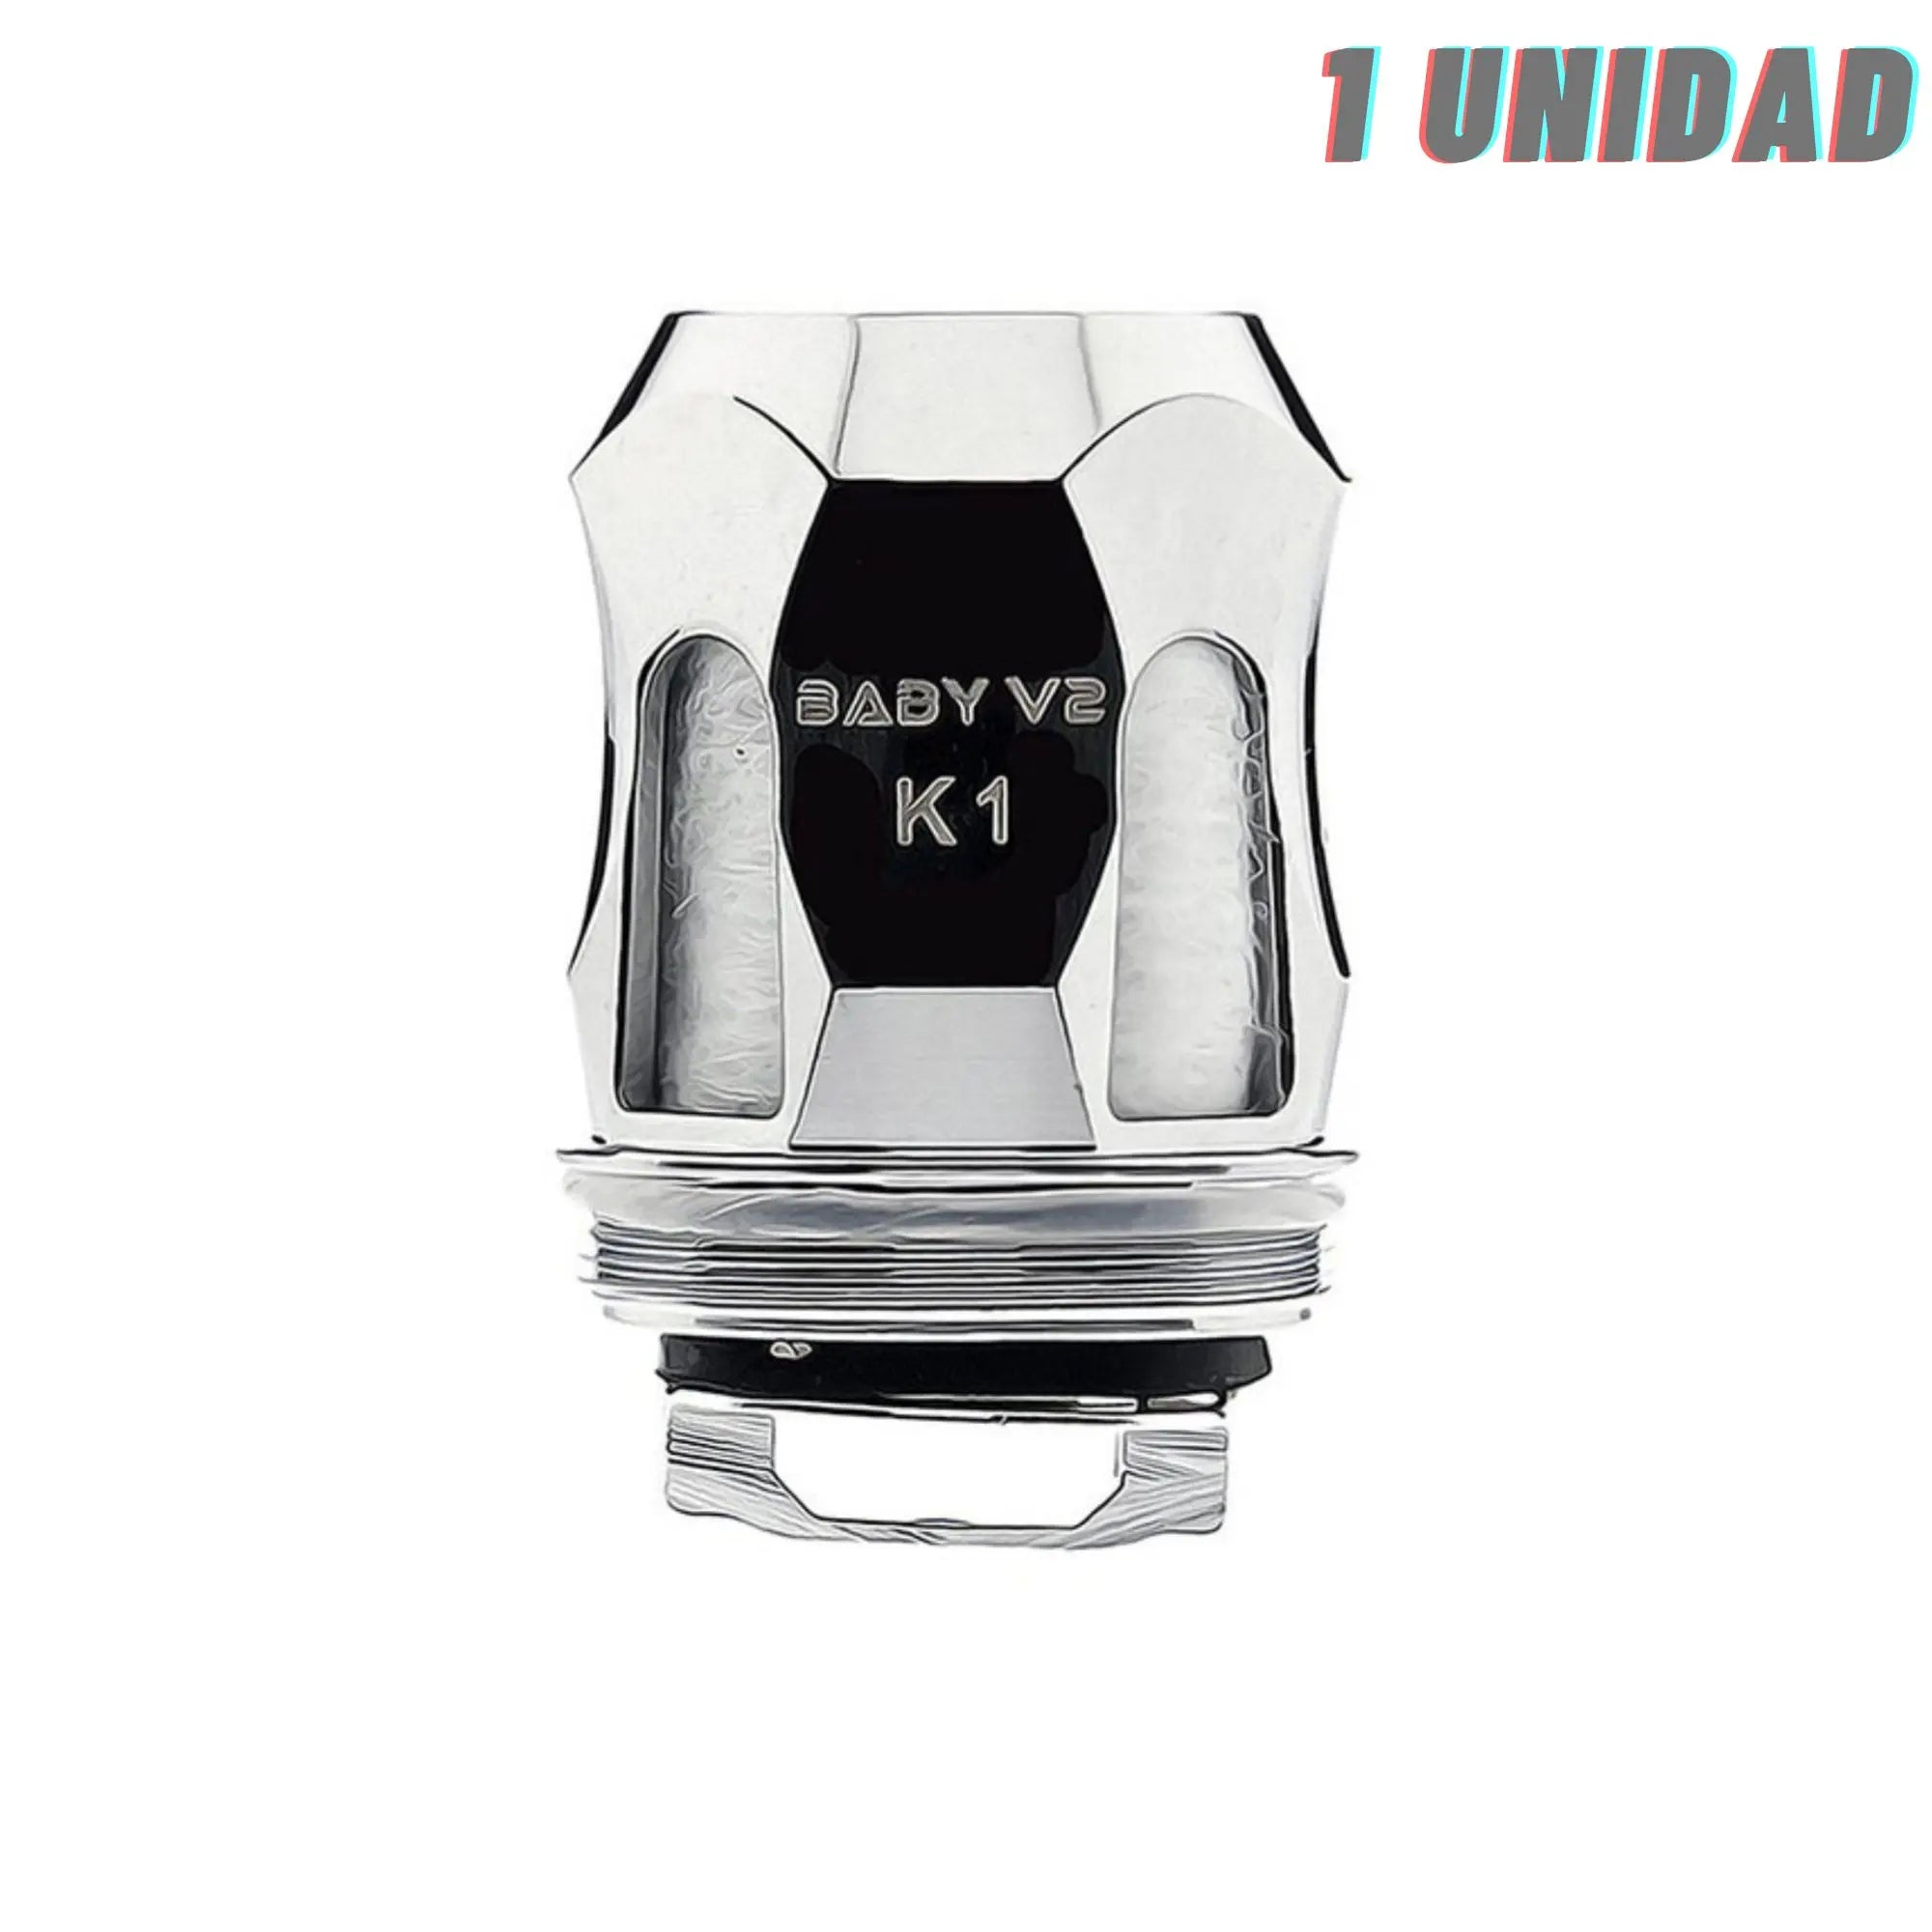 Smok Baby V2 A3 0,15ohm / V2 A2 0,2ohm Coil - 1 unidad